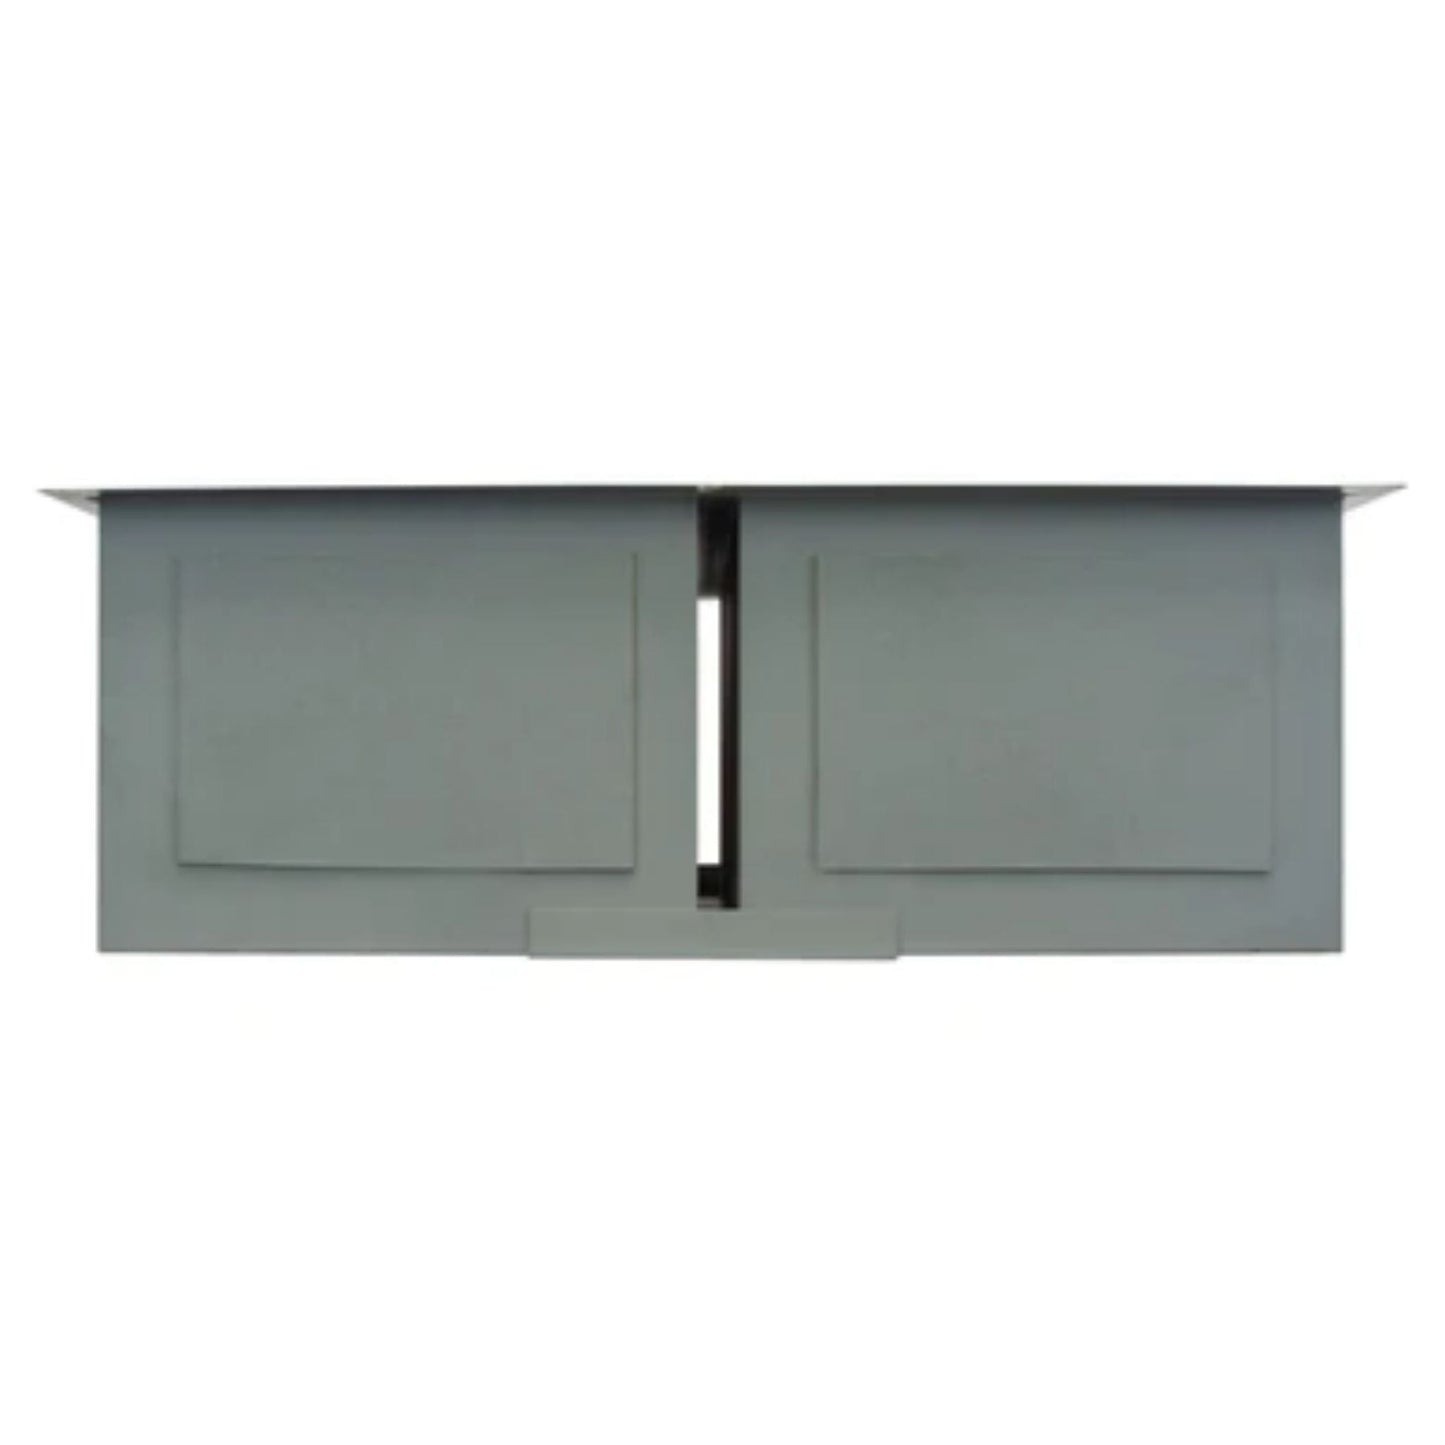 LessCare Zero-Radius Undermount Stainless Steel Double Basin Kitchen Sink - LP5